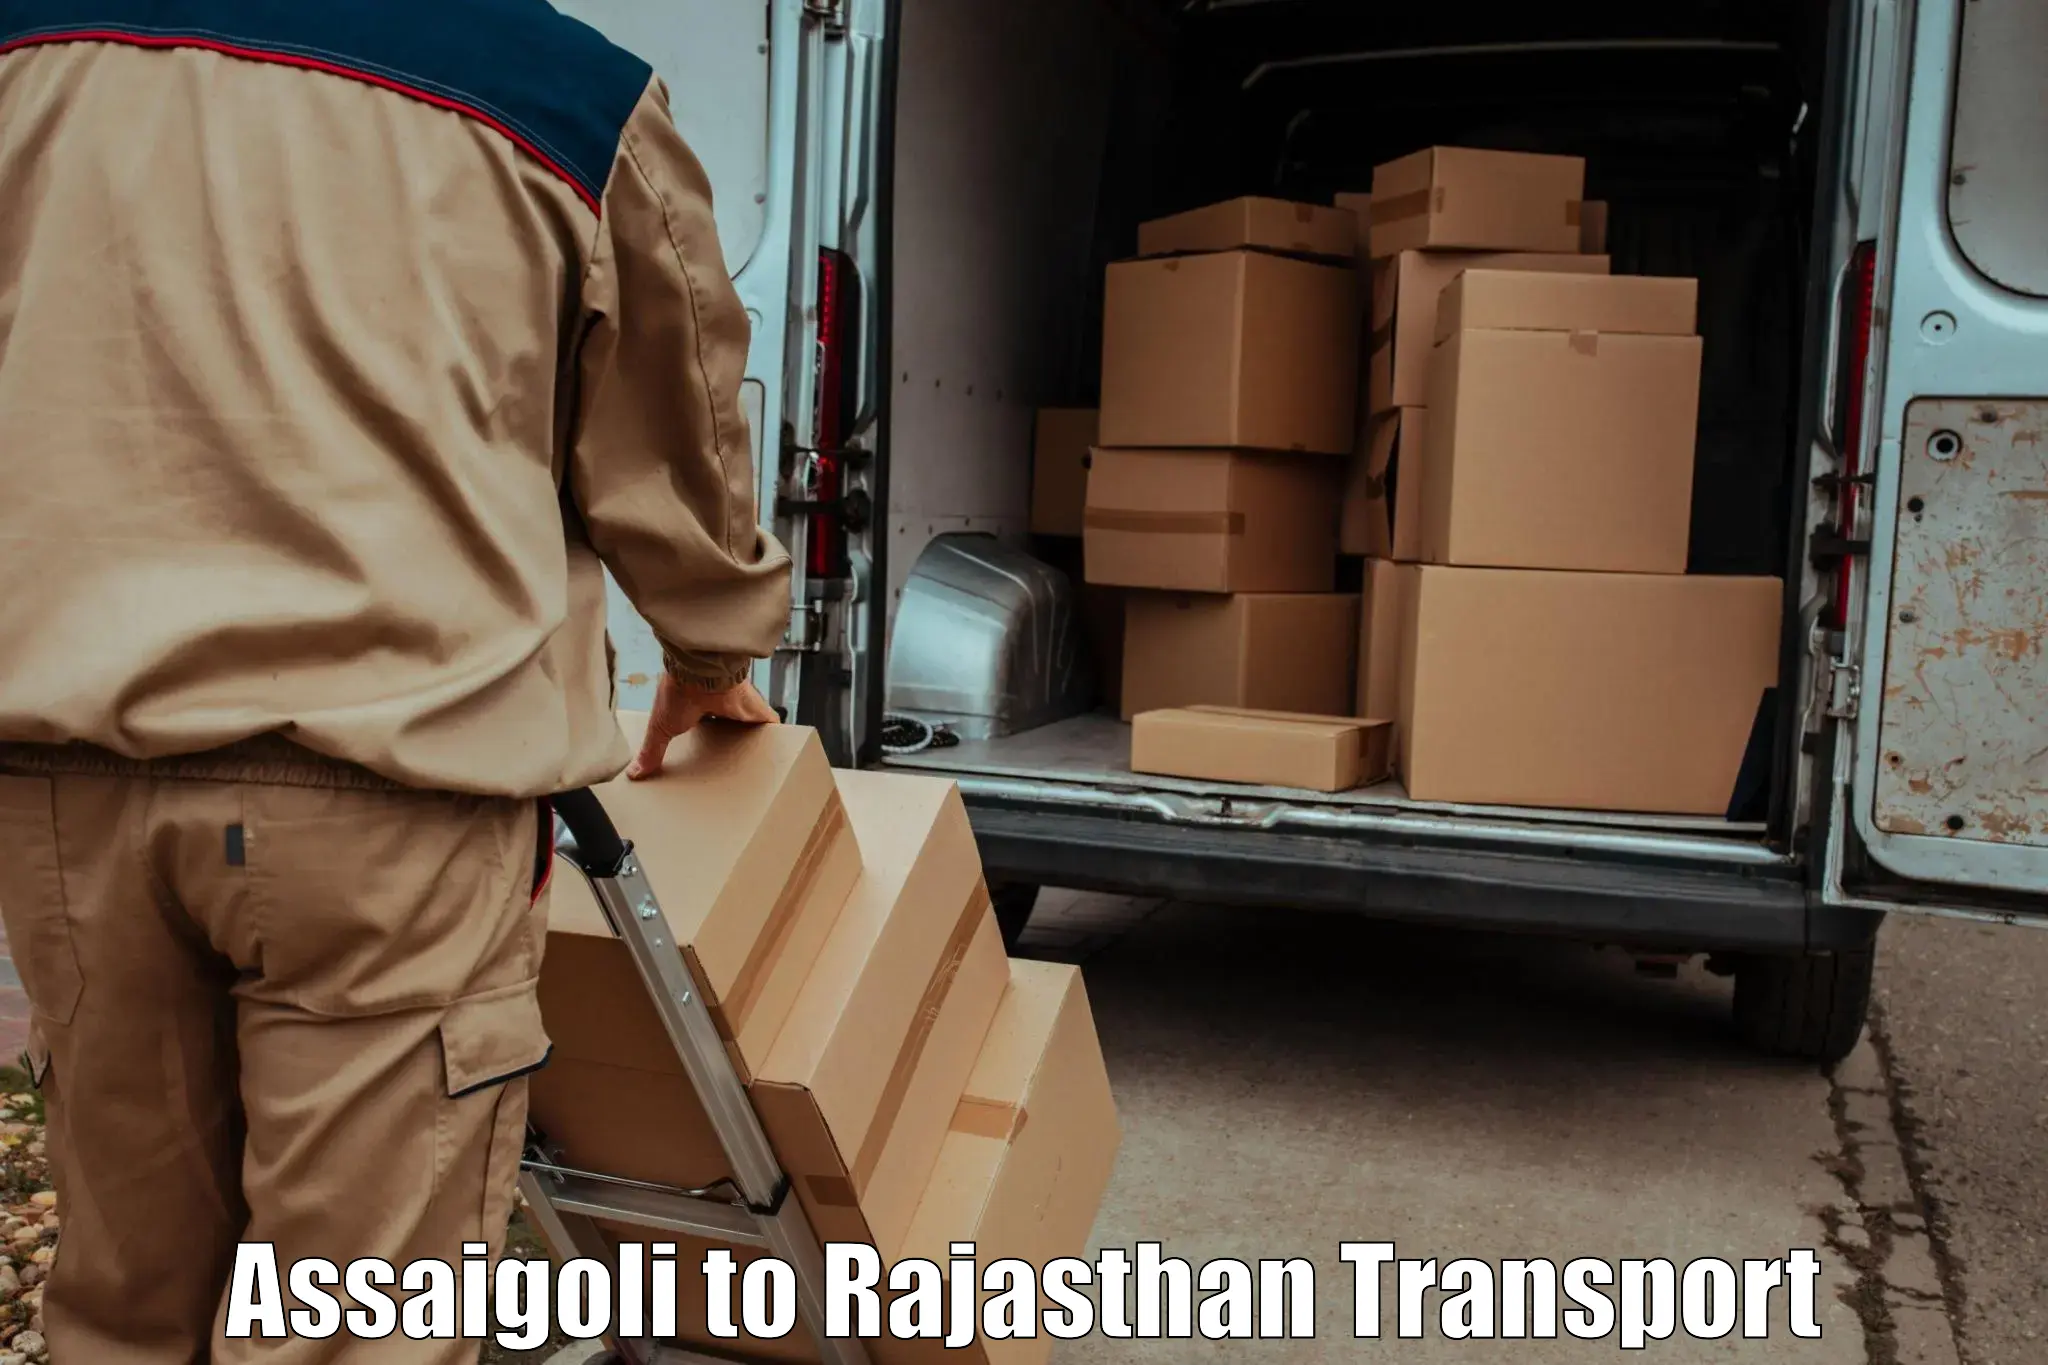 Land transport services Assaigoli to Chittorgarh